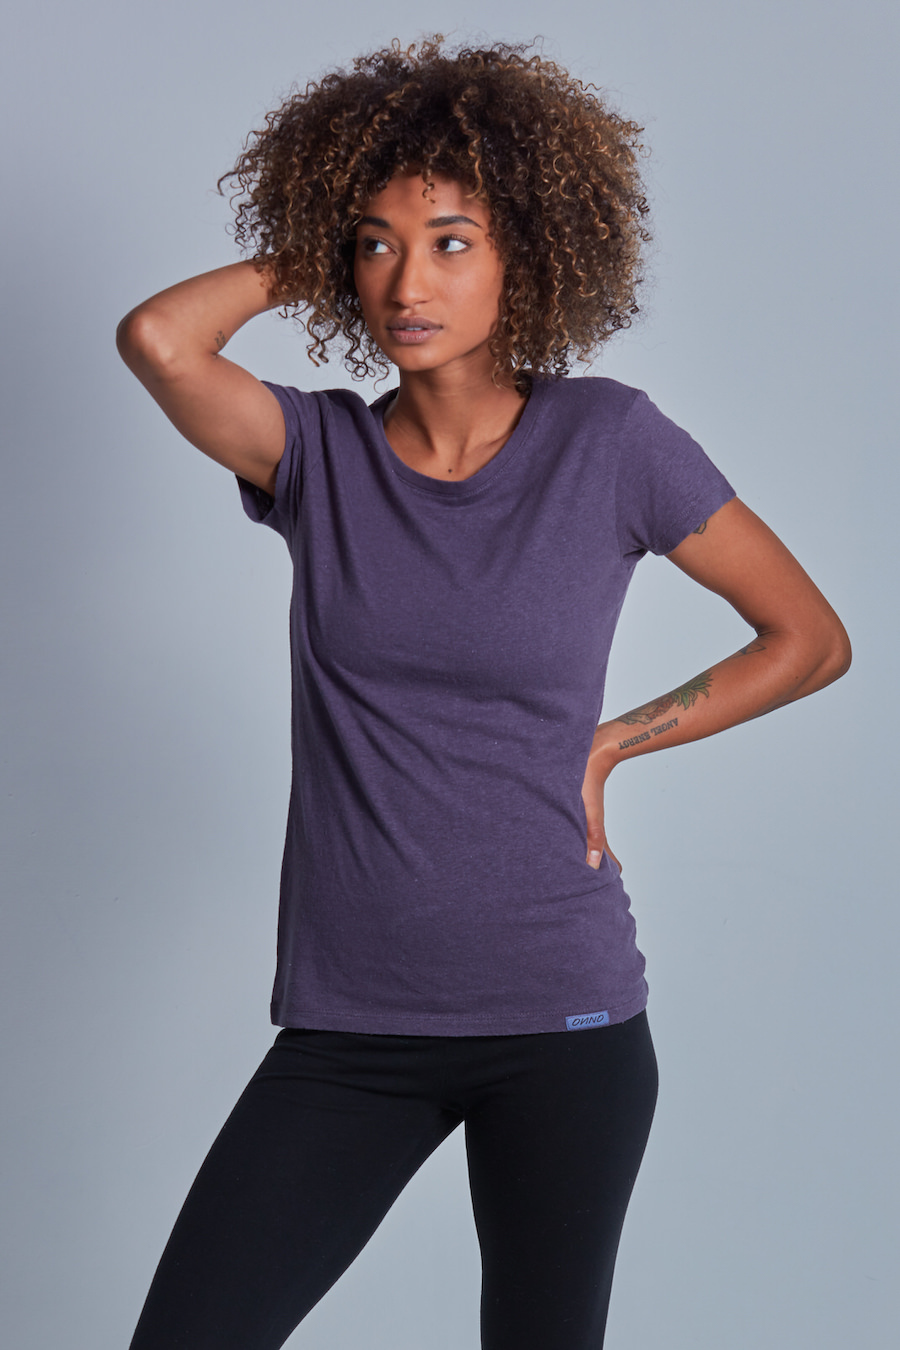 Hemp Basics - Ladies T-Shirts